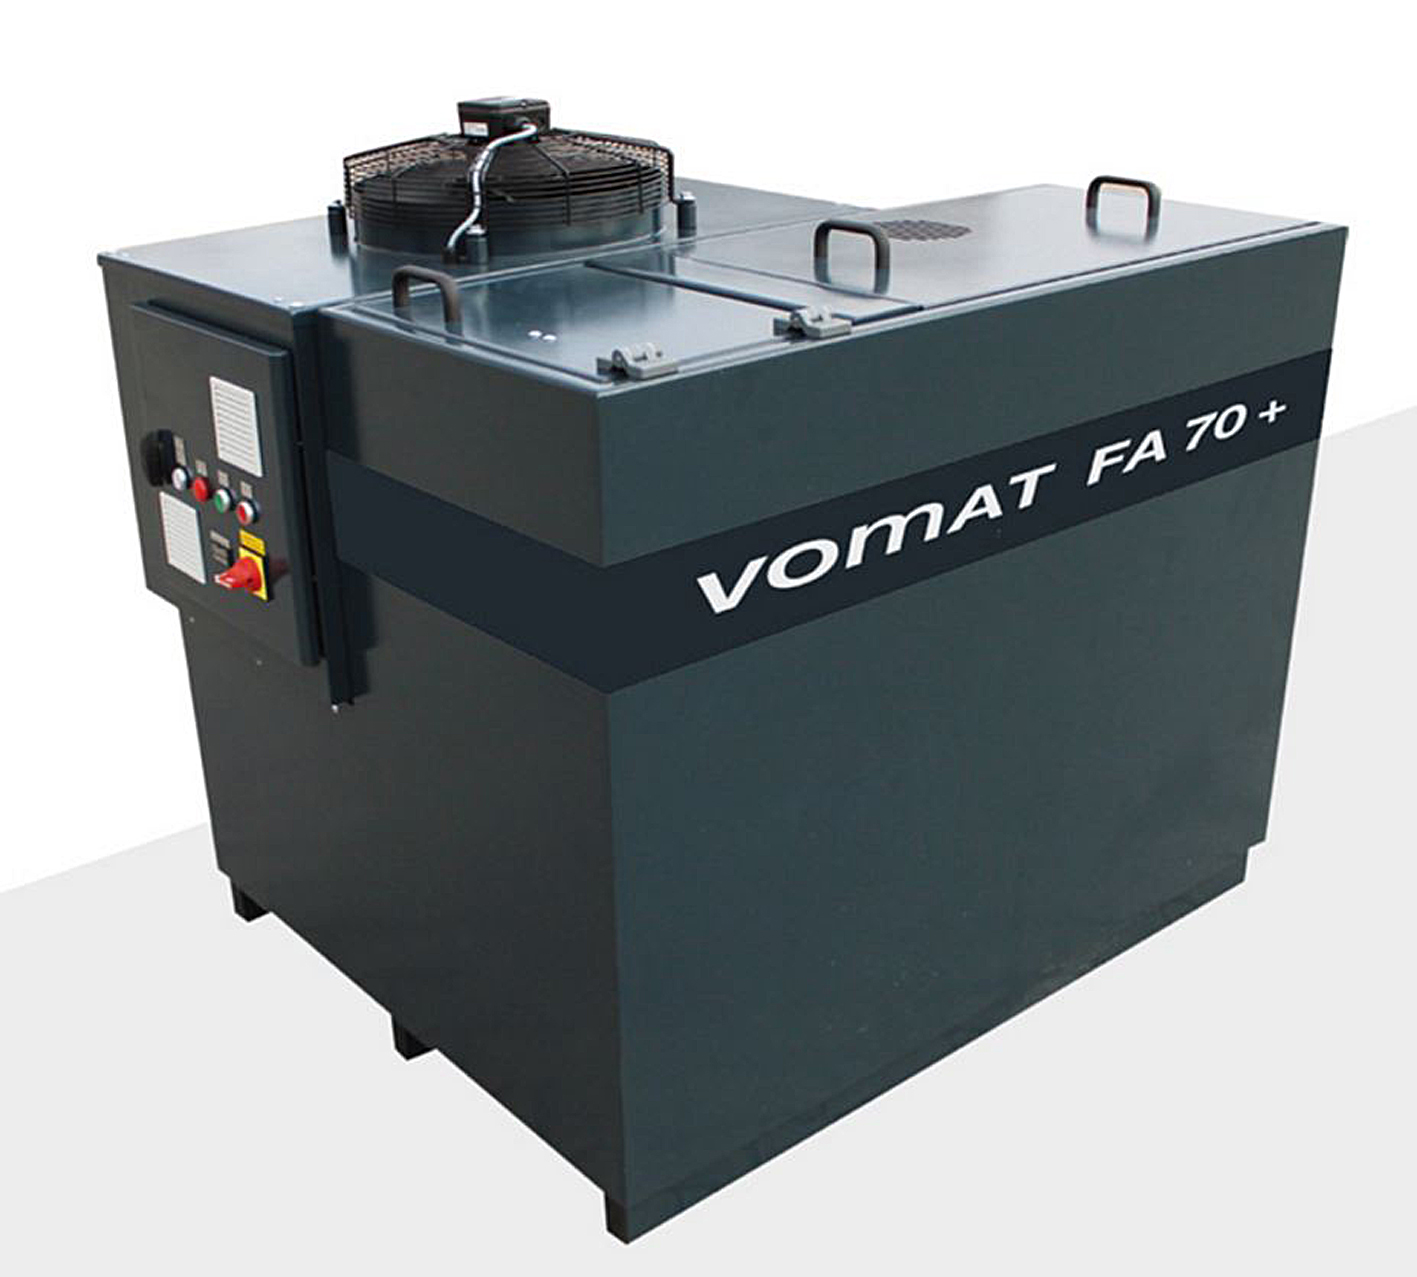 Besonders zum Nachschleifen geeignet ist die VOMAT Kleinanlage FA 70+. Die Einzelplatzlösung vereint in kompakten Maßen leistungsfähige VOMAT Feinstfiltrations-Technologie.